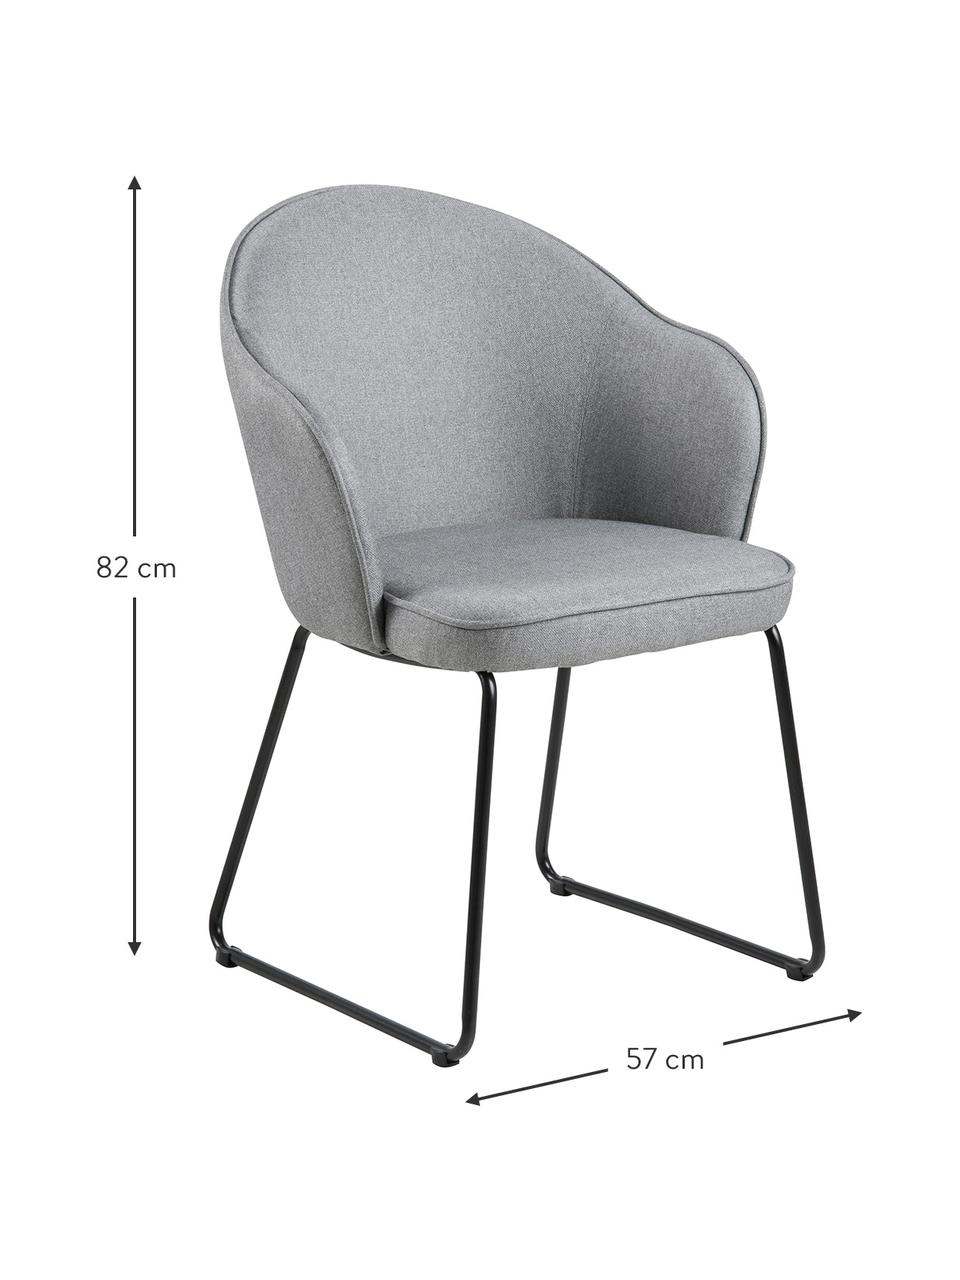 Chaise design Mitzie, Tissu gris clair, pieds noir